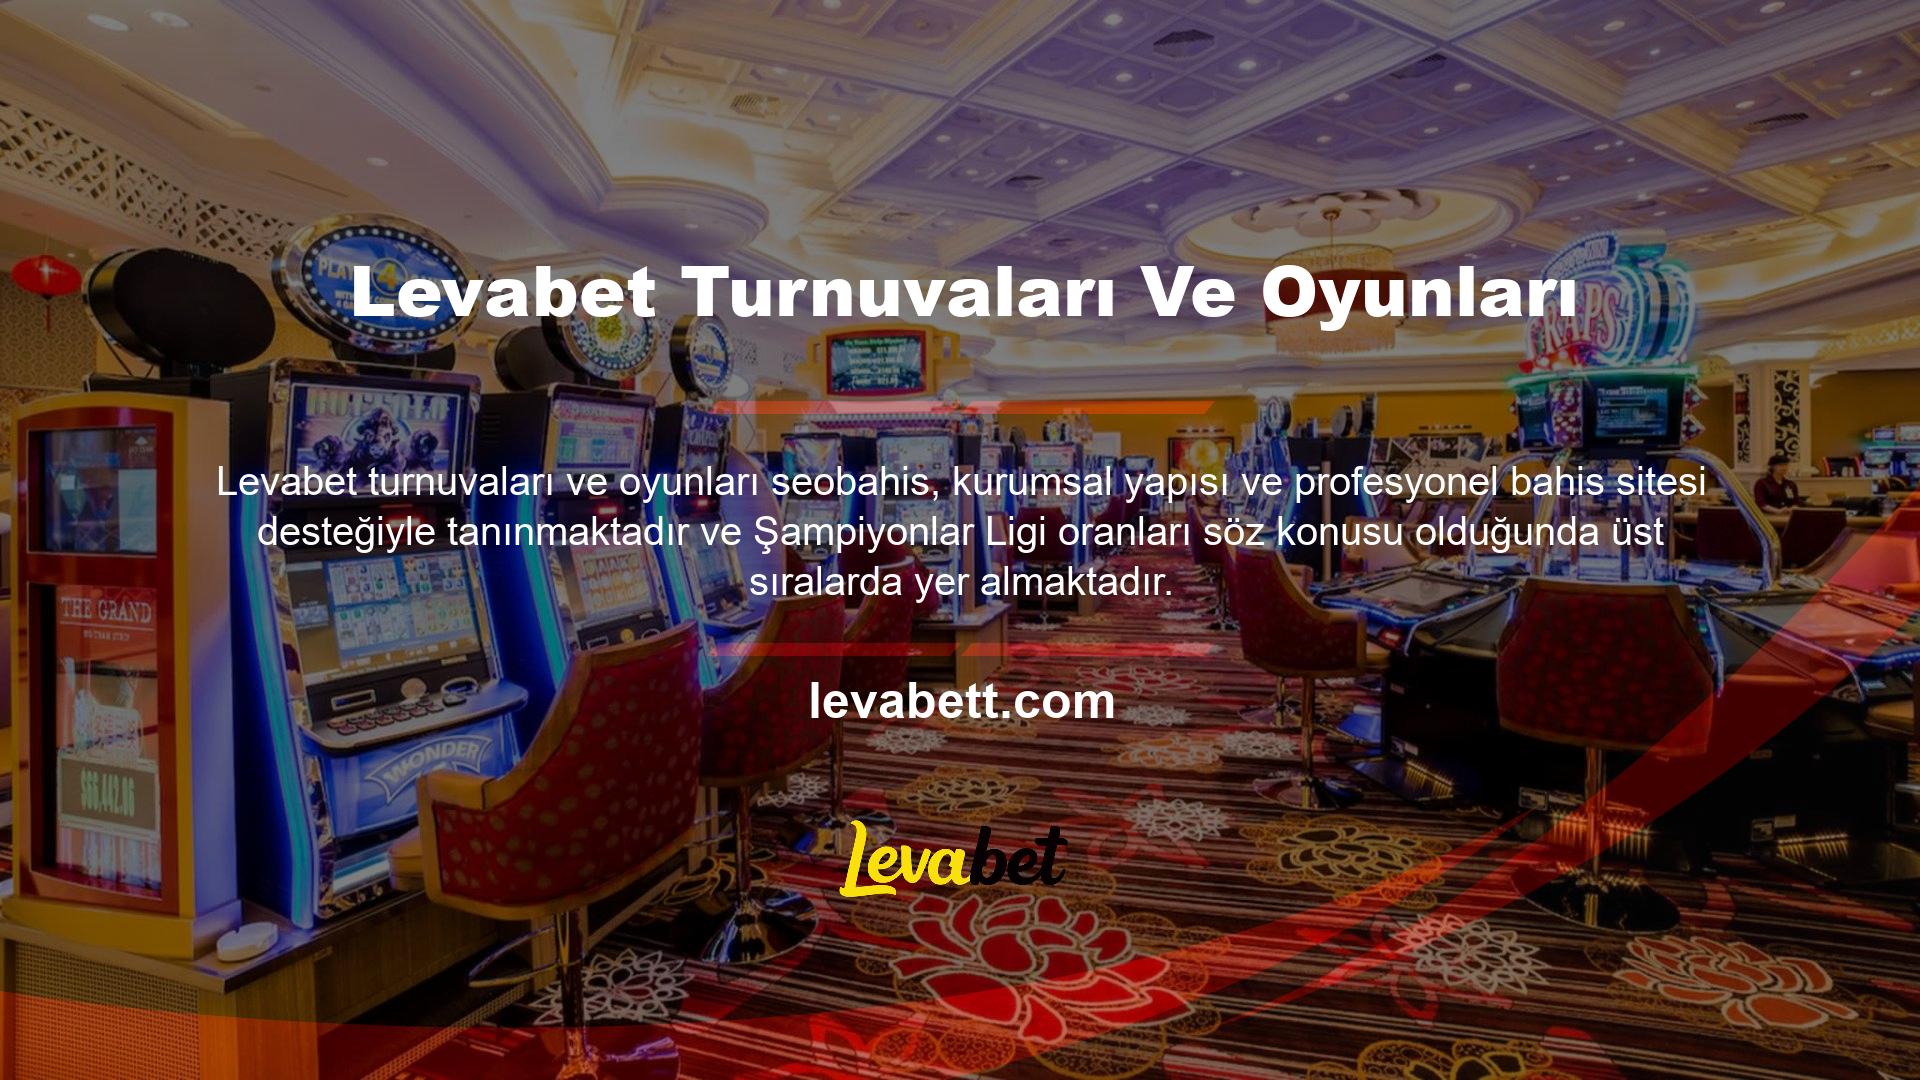 Levabet turnuvalarının ve oyunlarının ilkelerine bağlılığı ve güvenilirliği ülkemiz bahisçileri tarafından kanıtlanmıştır